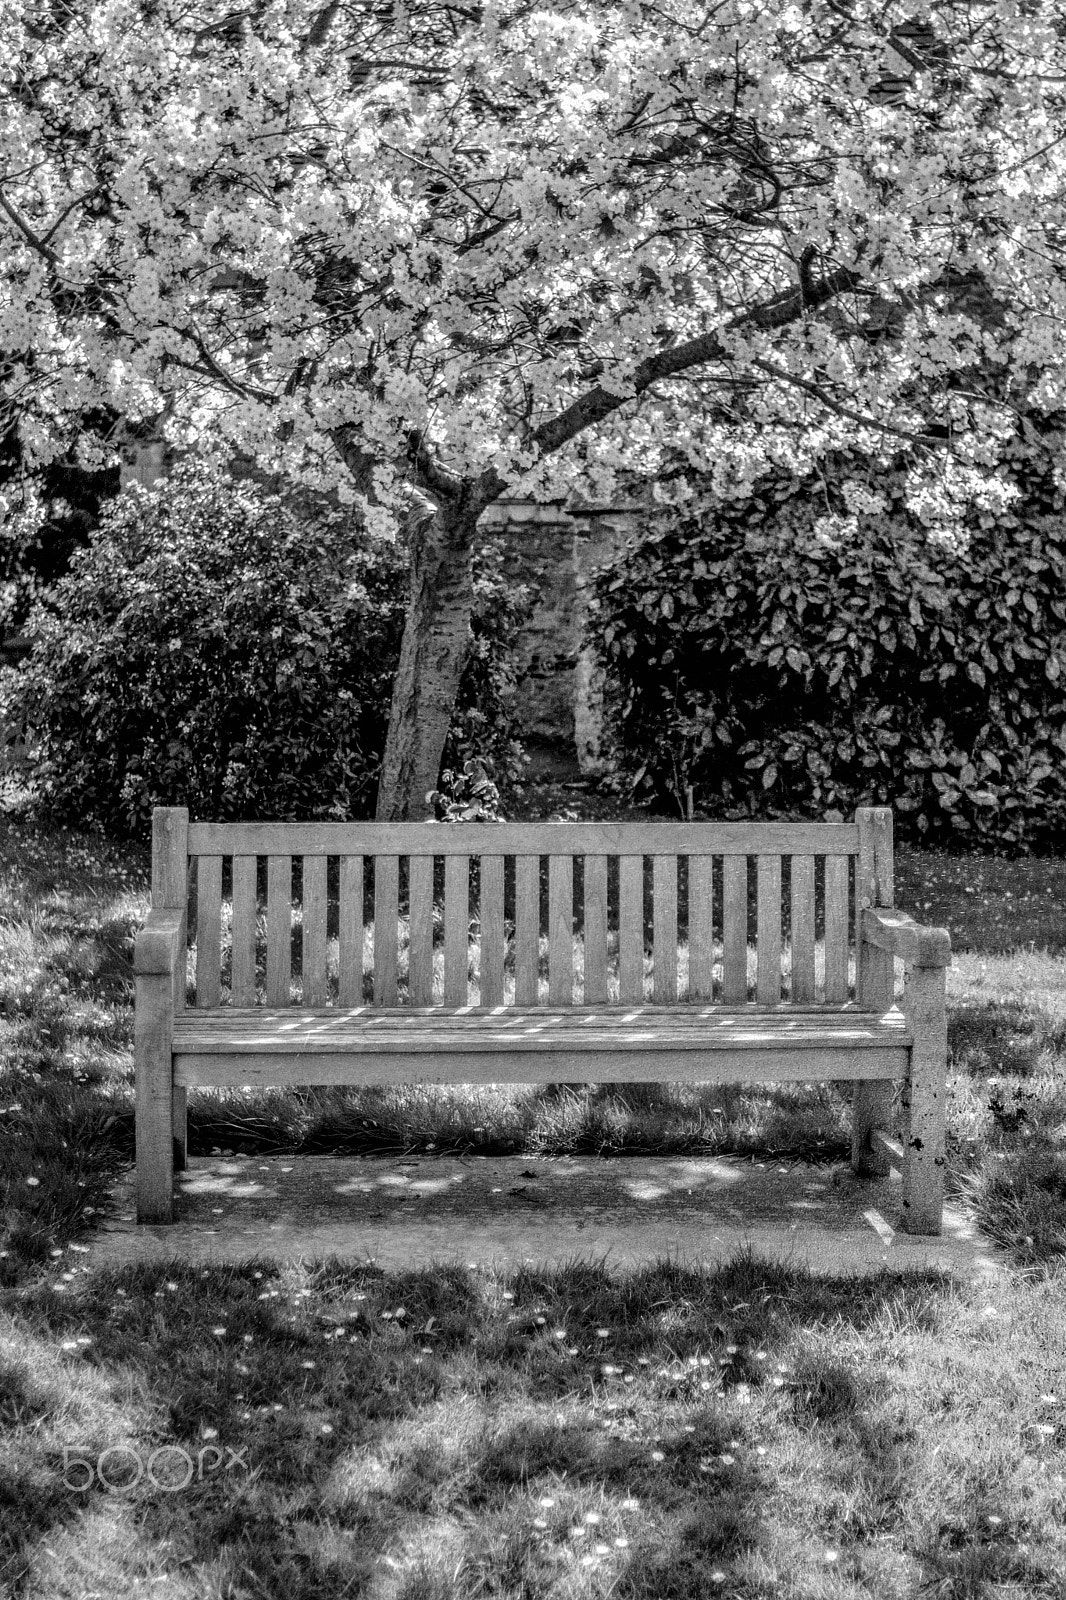 Nikon D7100 + Nikon AF Nikkor 35mm F2D sample photo. Cherry blossom bench photography